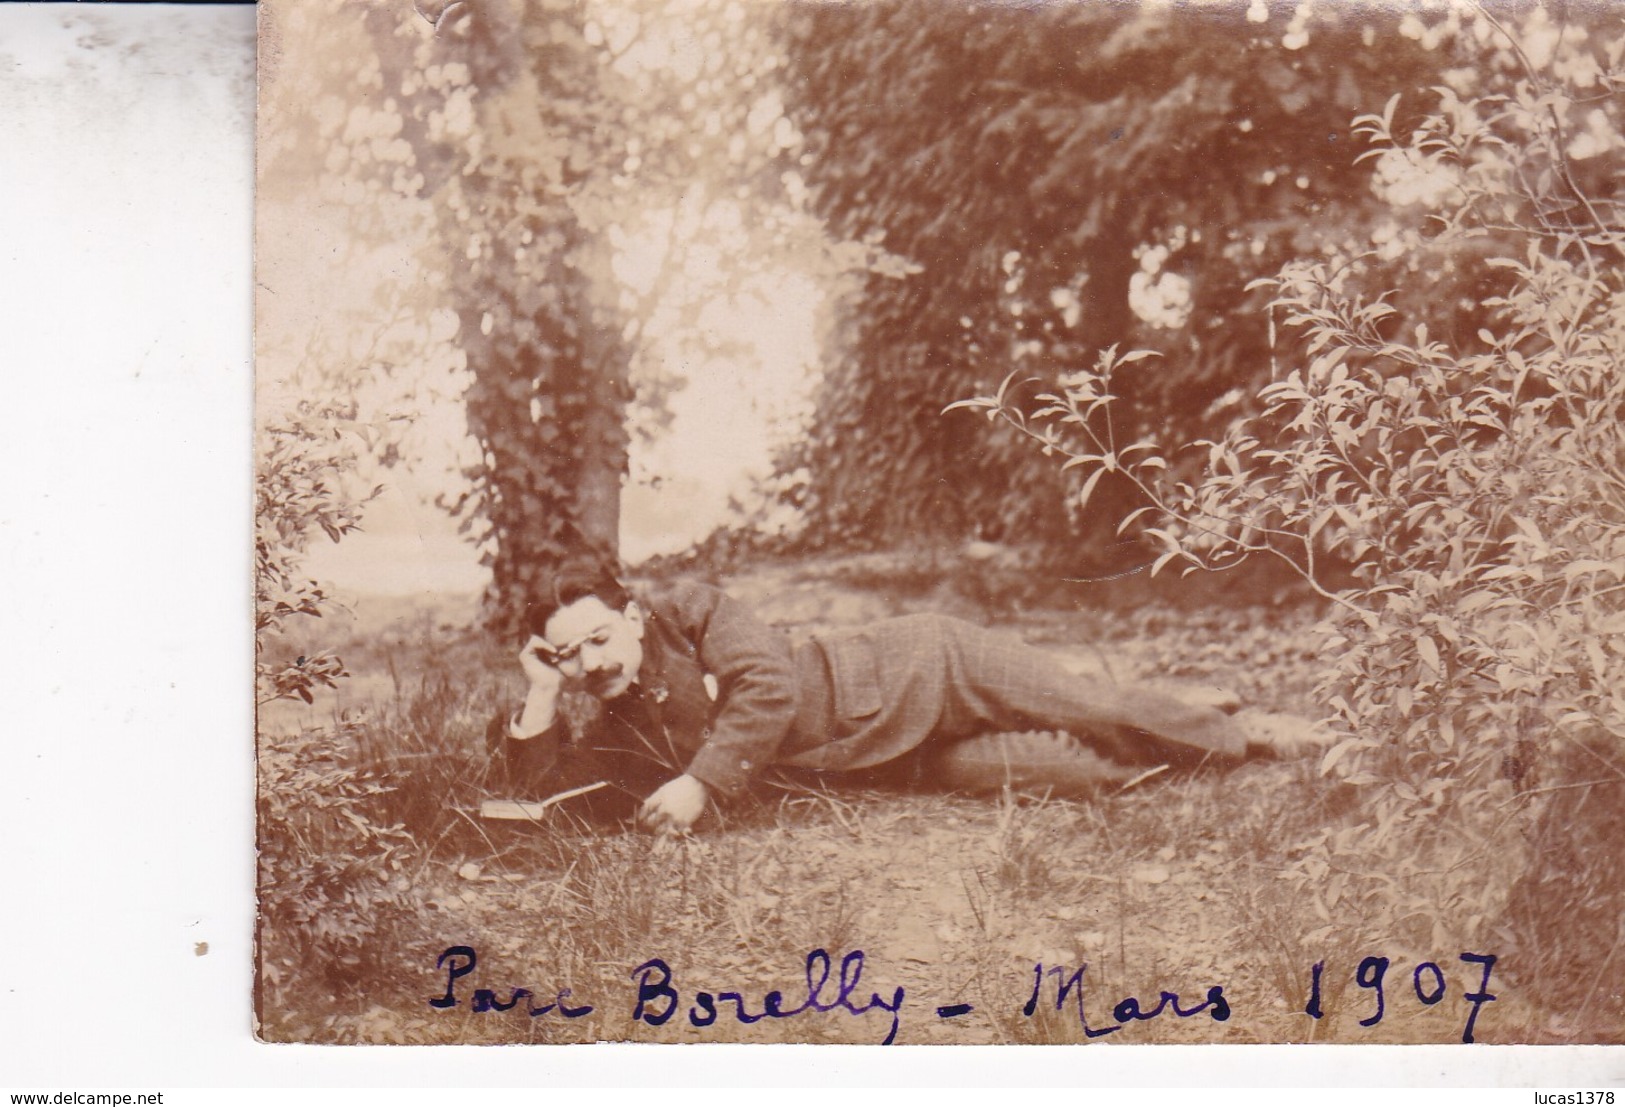 JOLI PHOTO MARSEILLE / PARC BORELY / MARS 1907 - Parcs Et Jardins